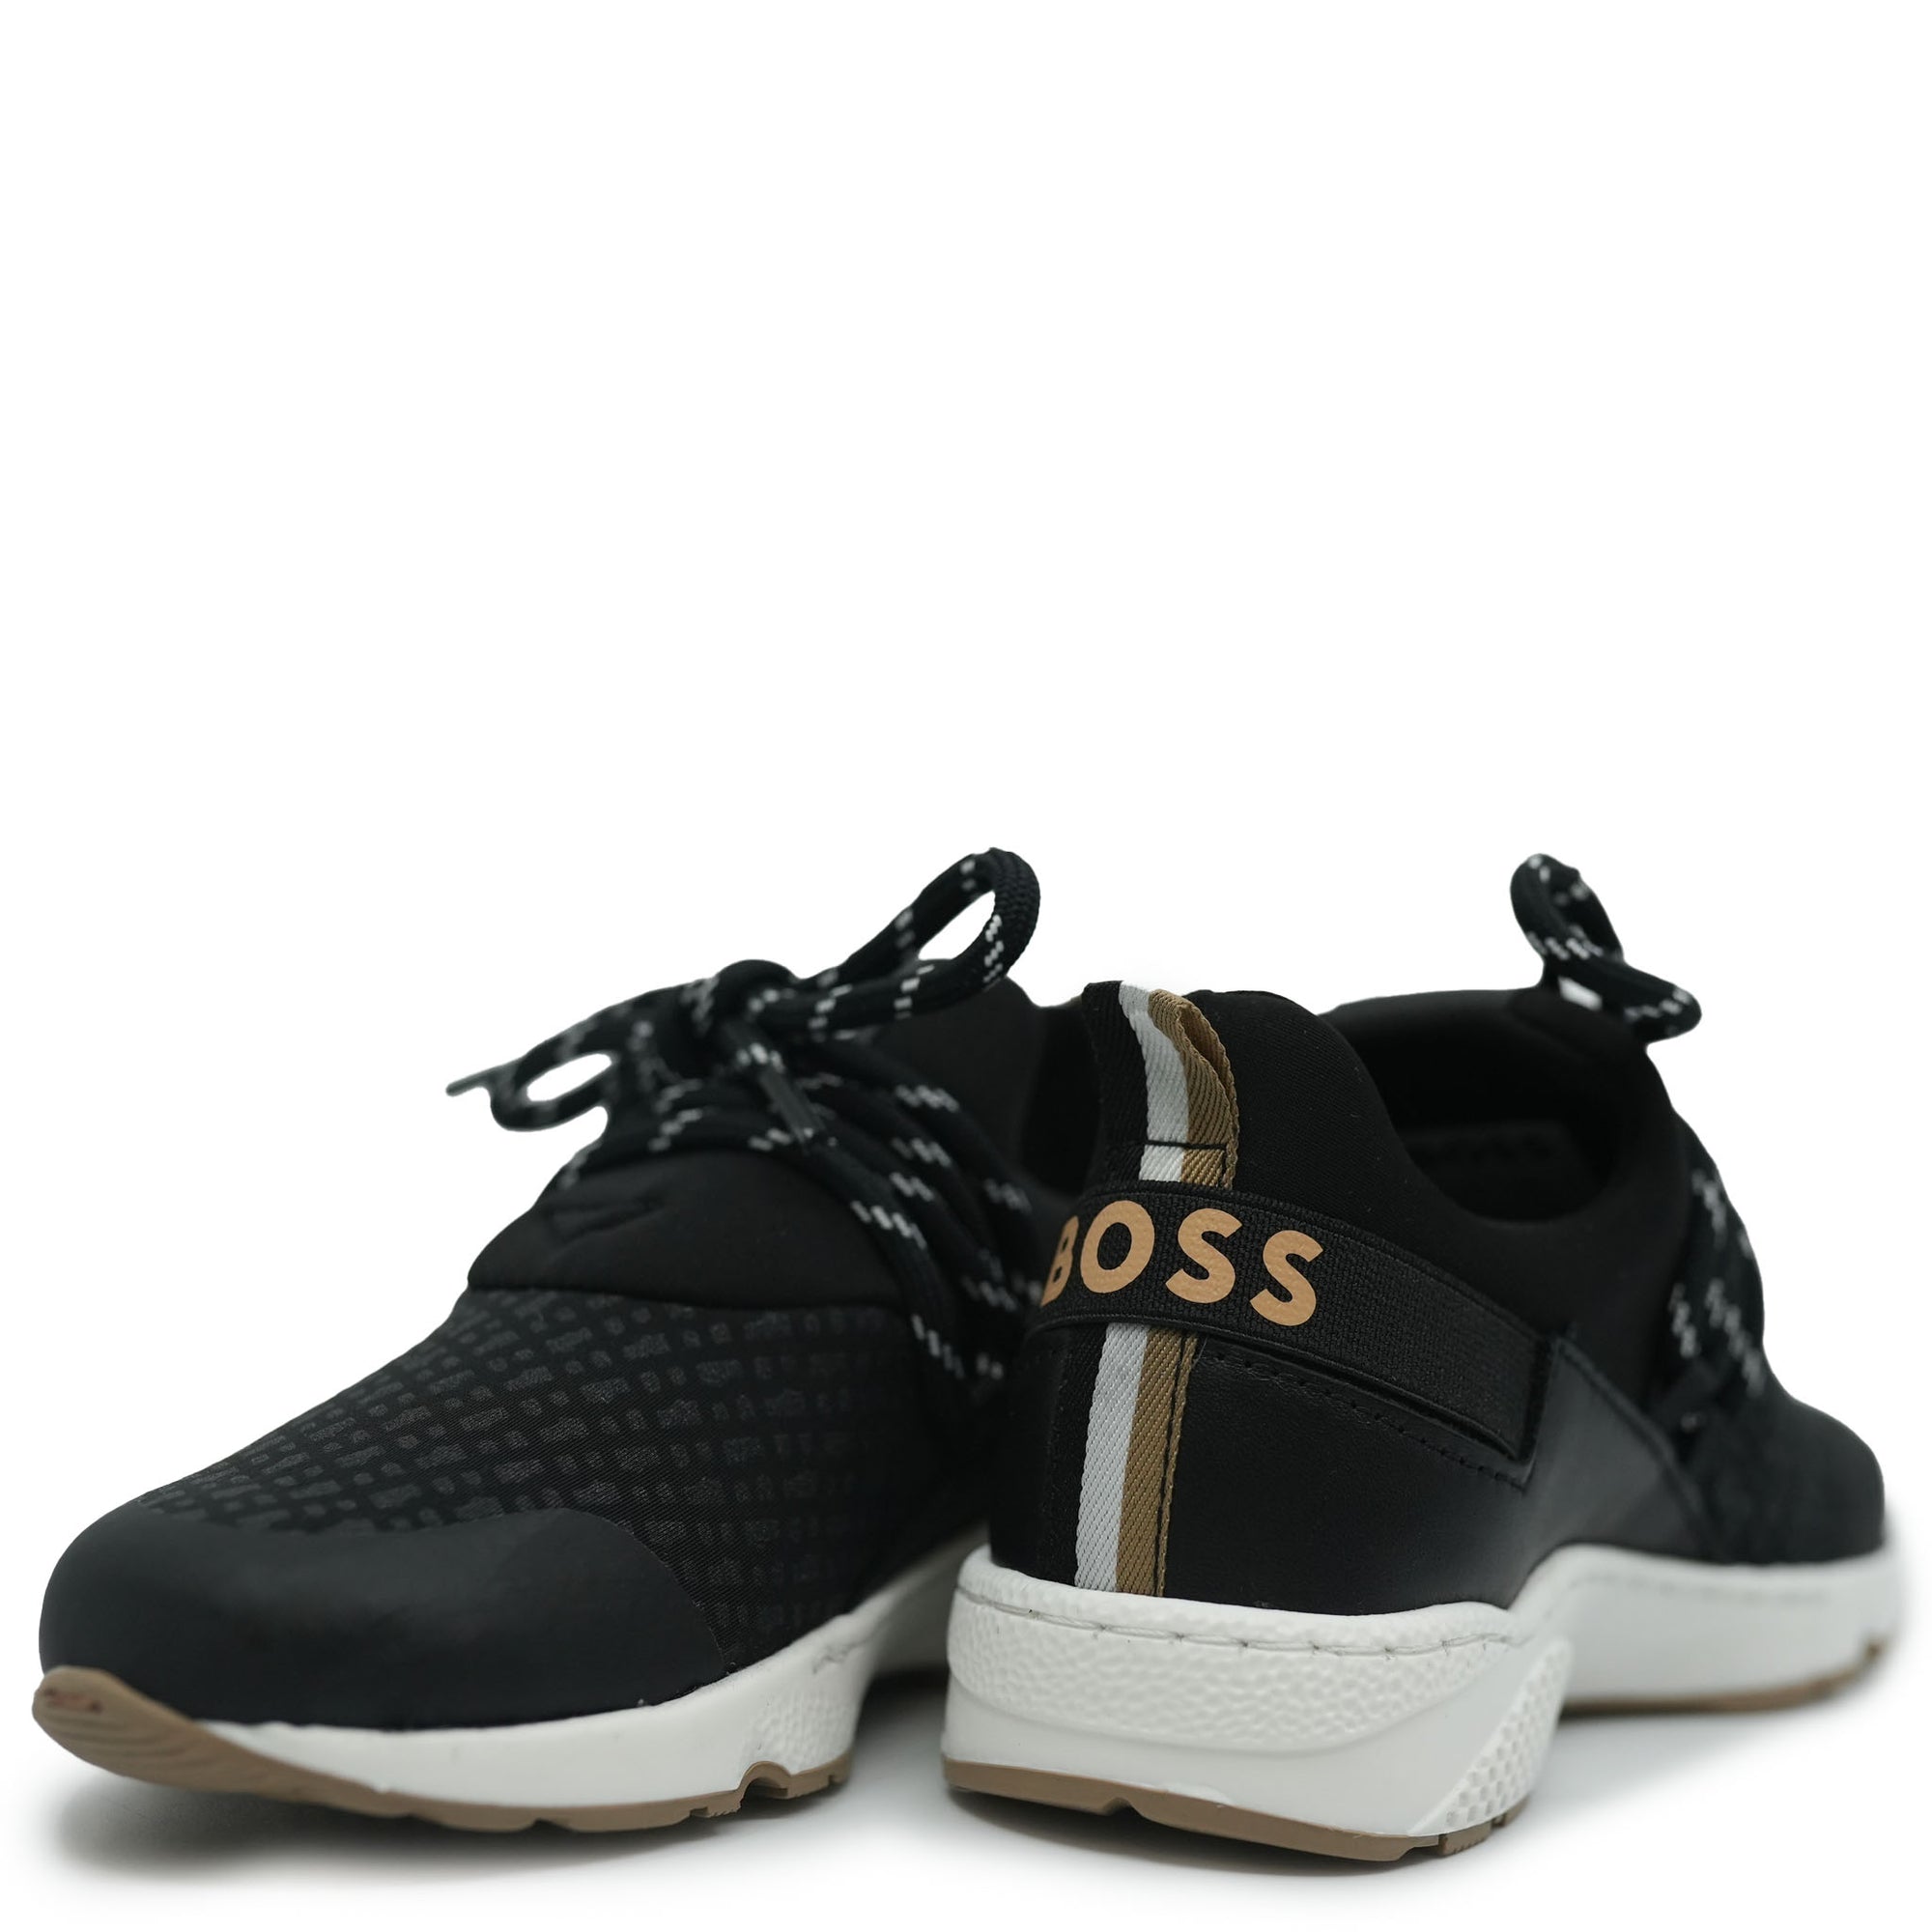 Hugo Boss Black Print Slip On Trainers-Tassel Children Shoes